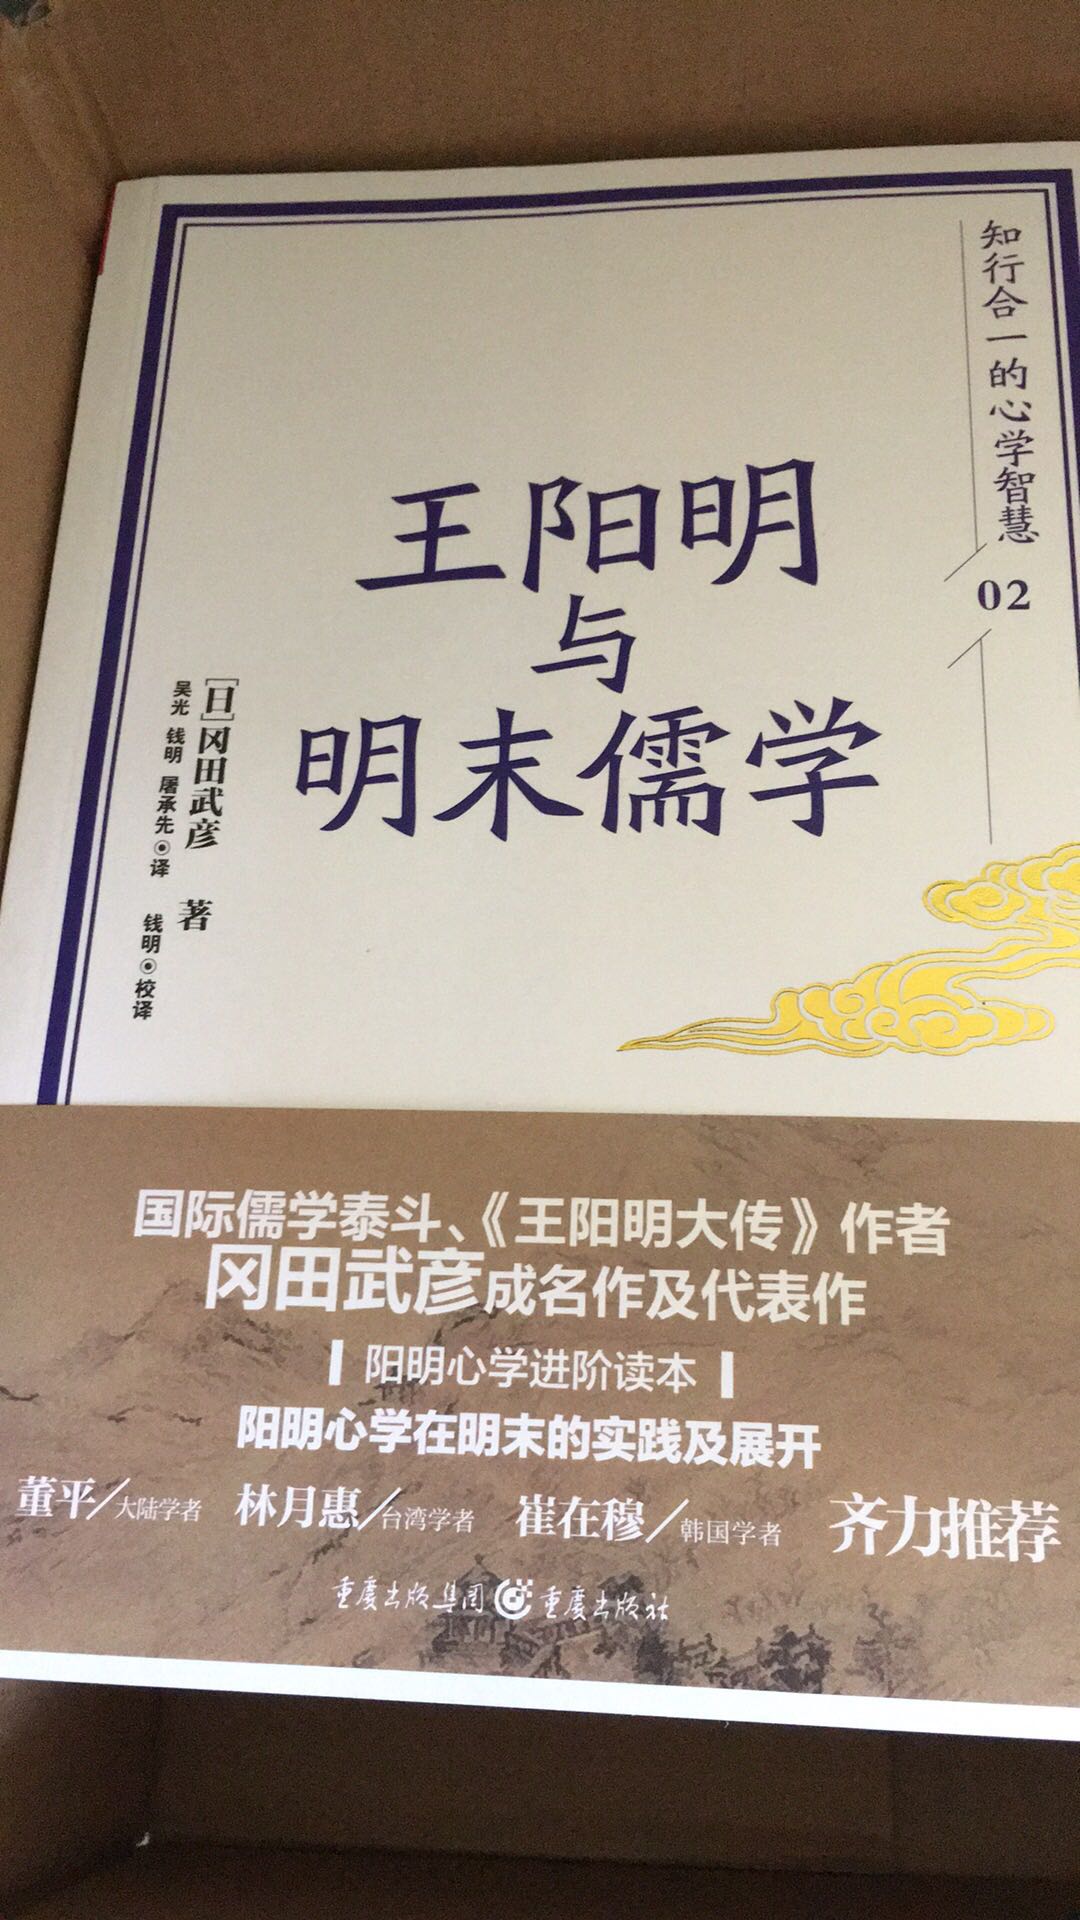 冈田先生是研究王阳明及宋明儒学的大家，功力深厚在书中处处可见，拜读。